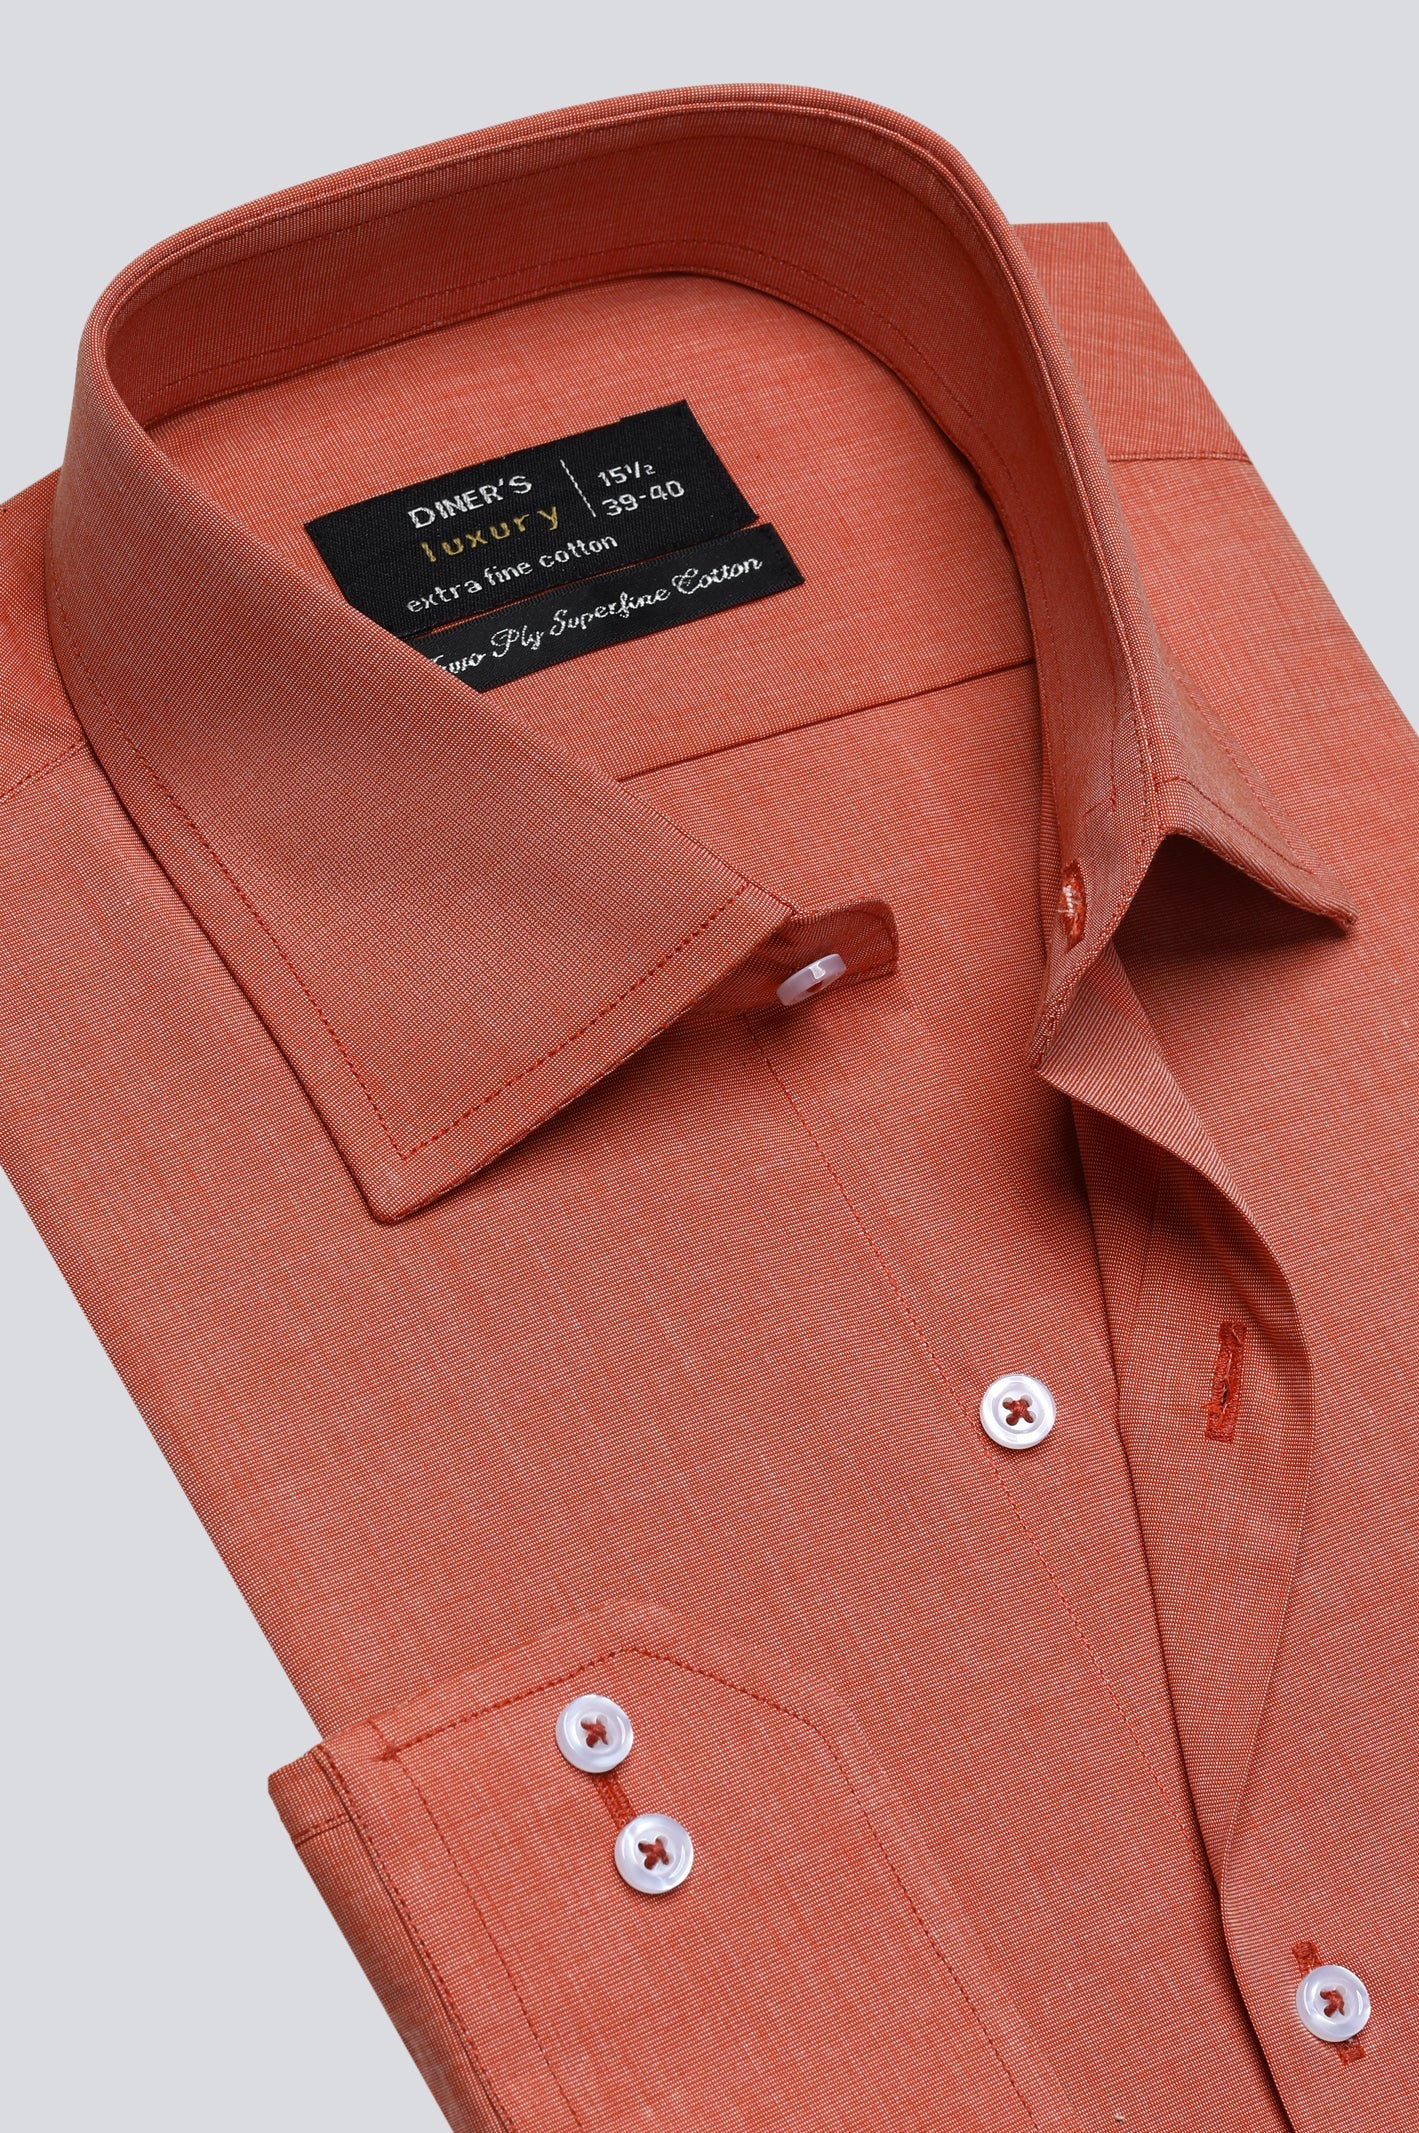 Orange Oxford Formal Shirt For Men - Diners